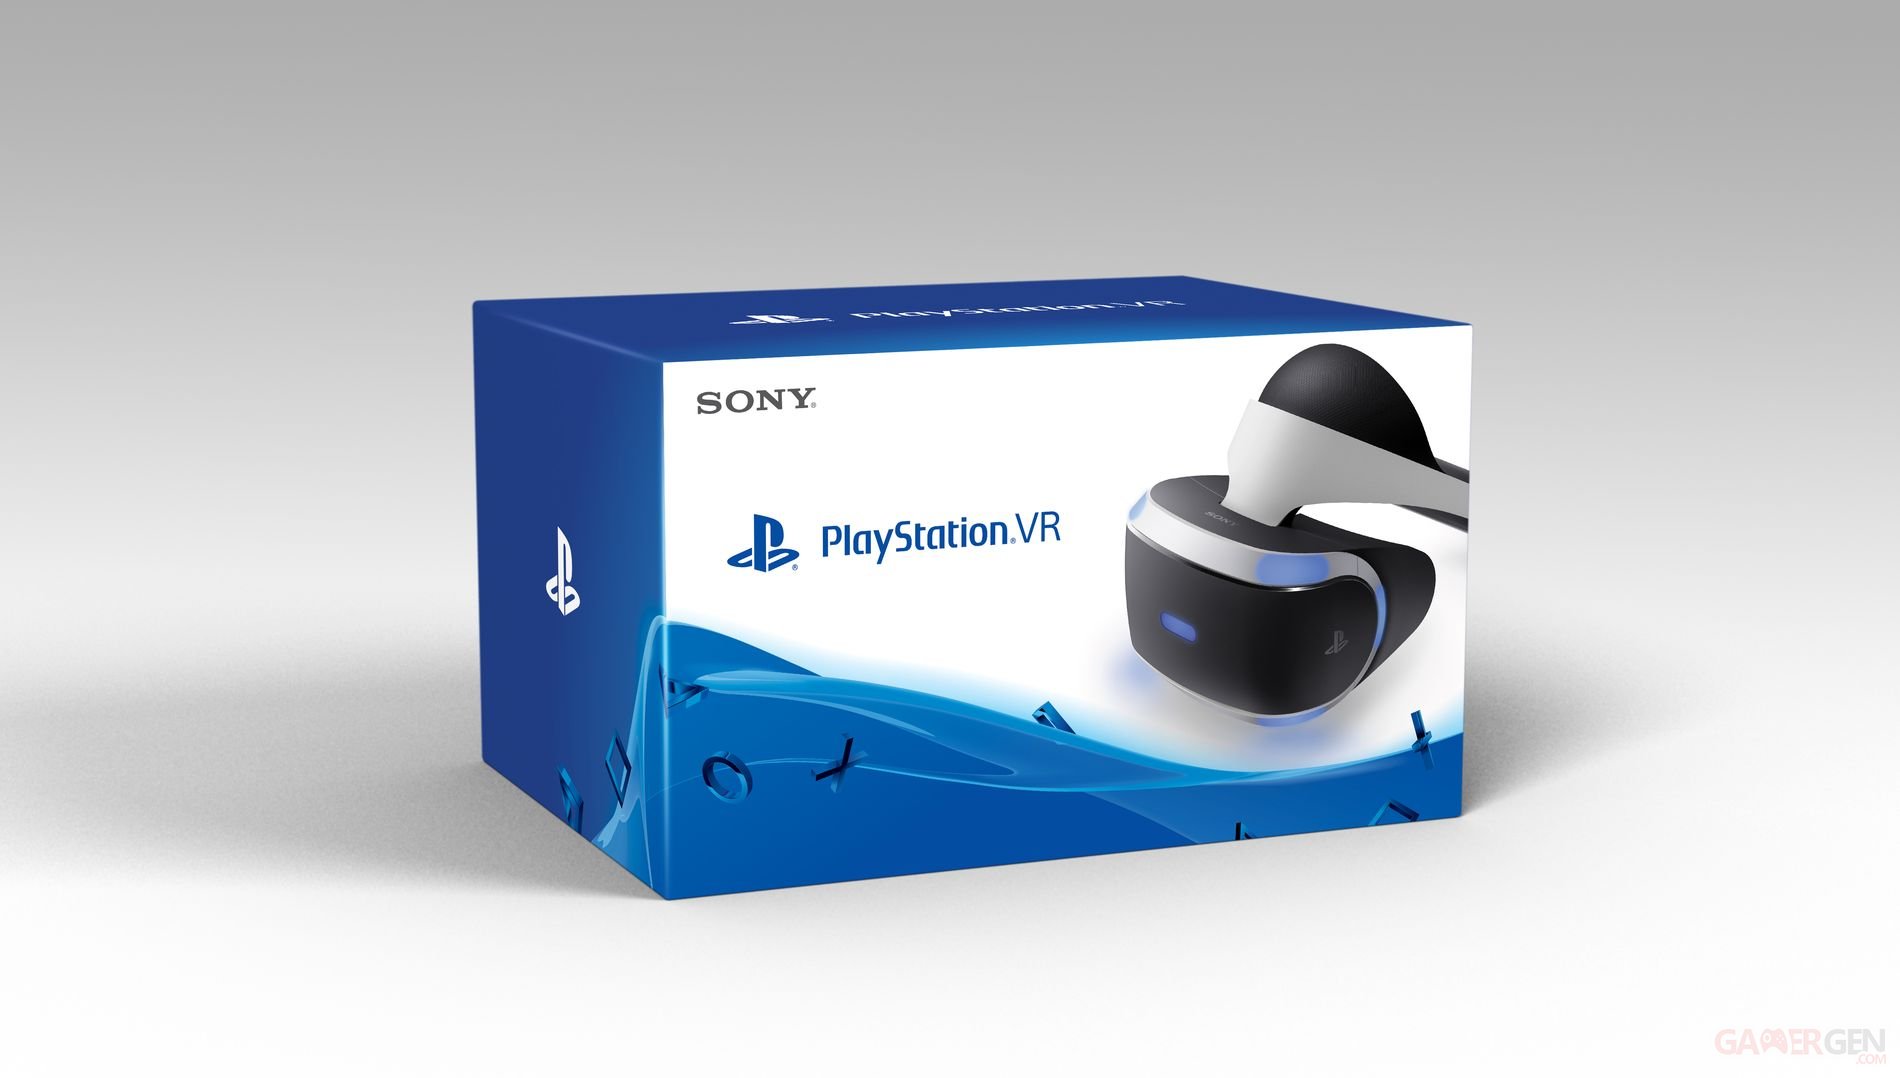 Pack de 11 éléments pour le casque VR pour PS4